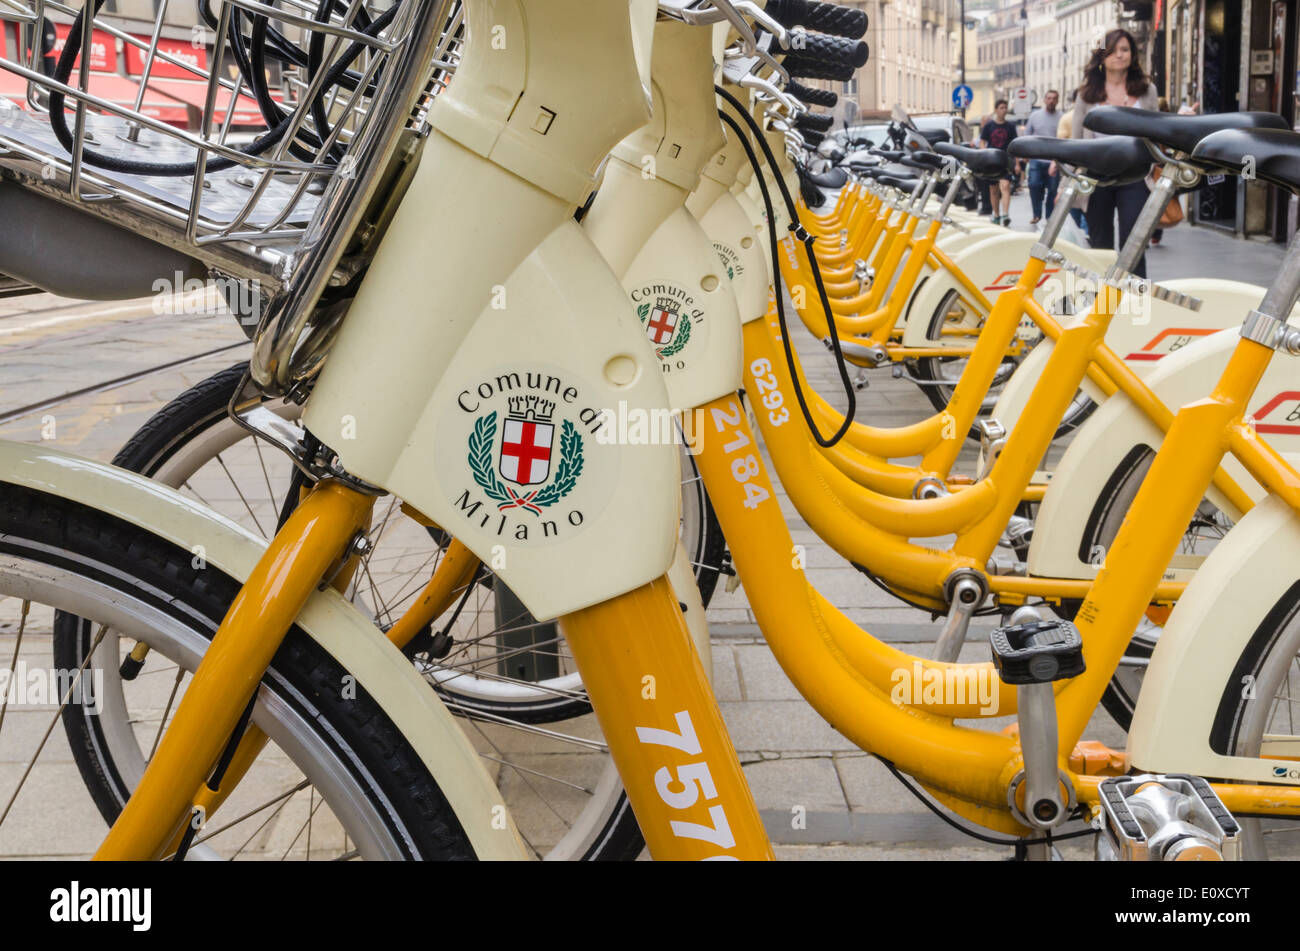 City hire bikes, Milan, Italy Stock Photo